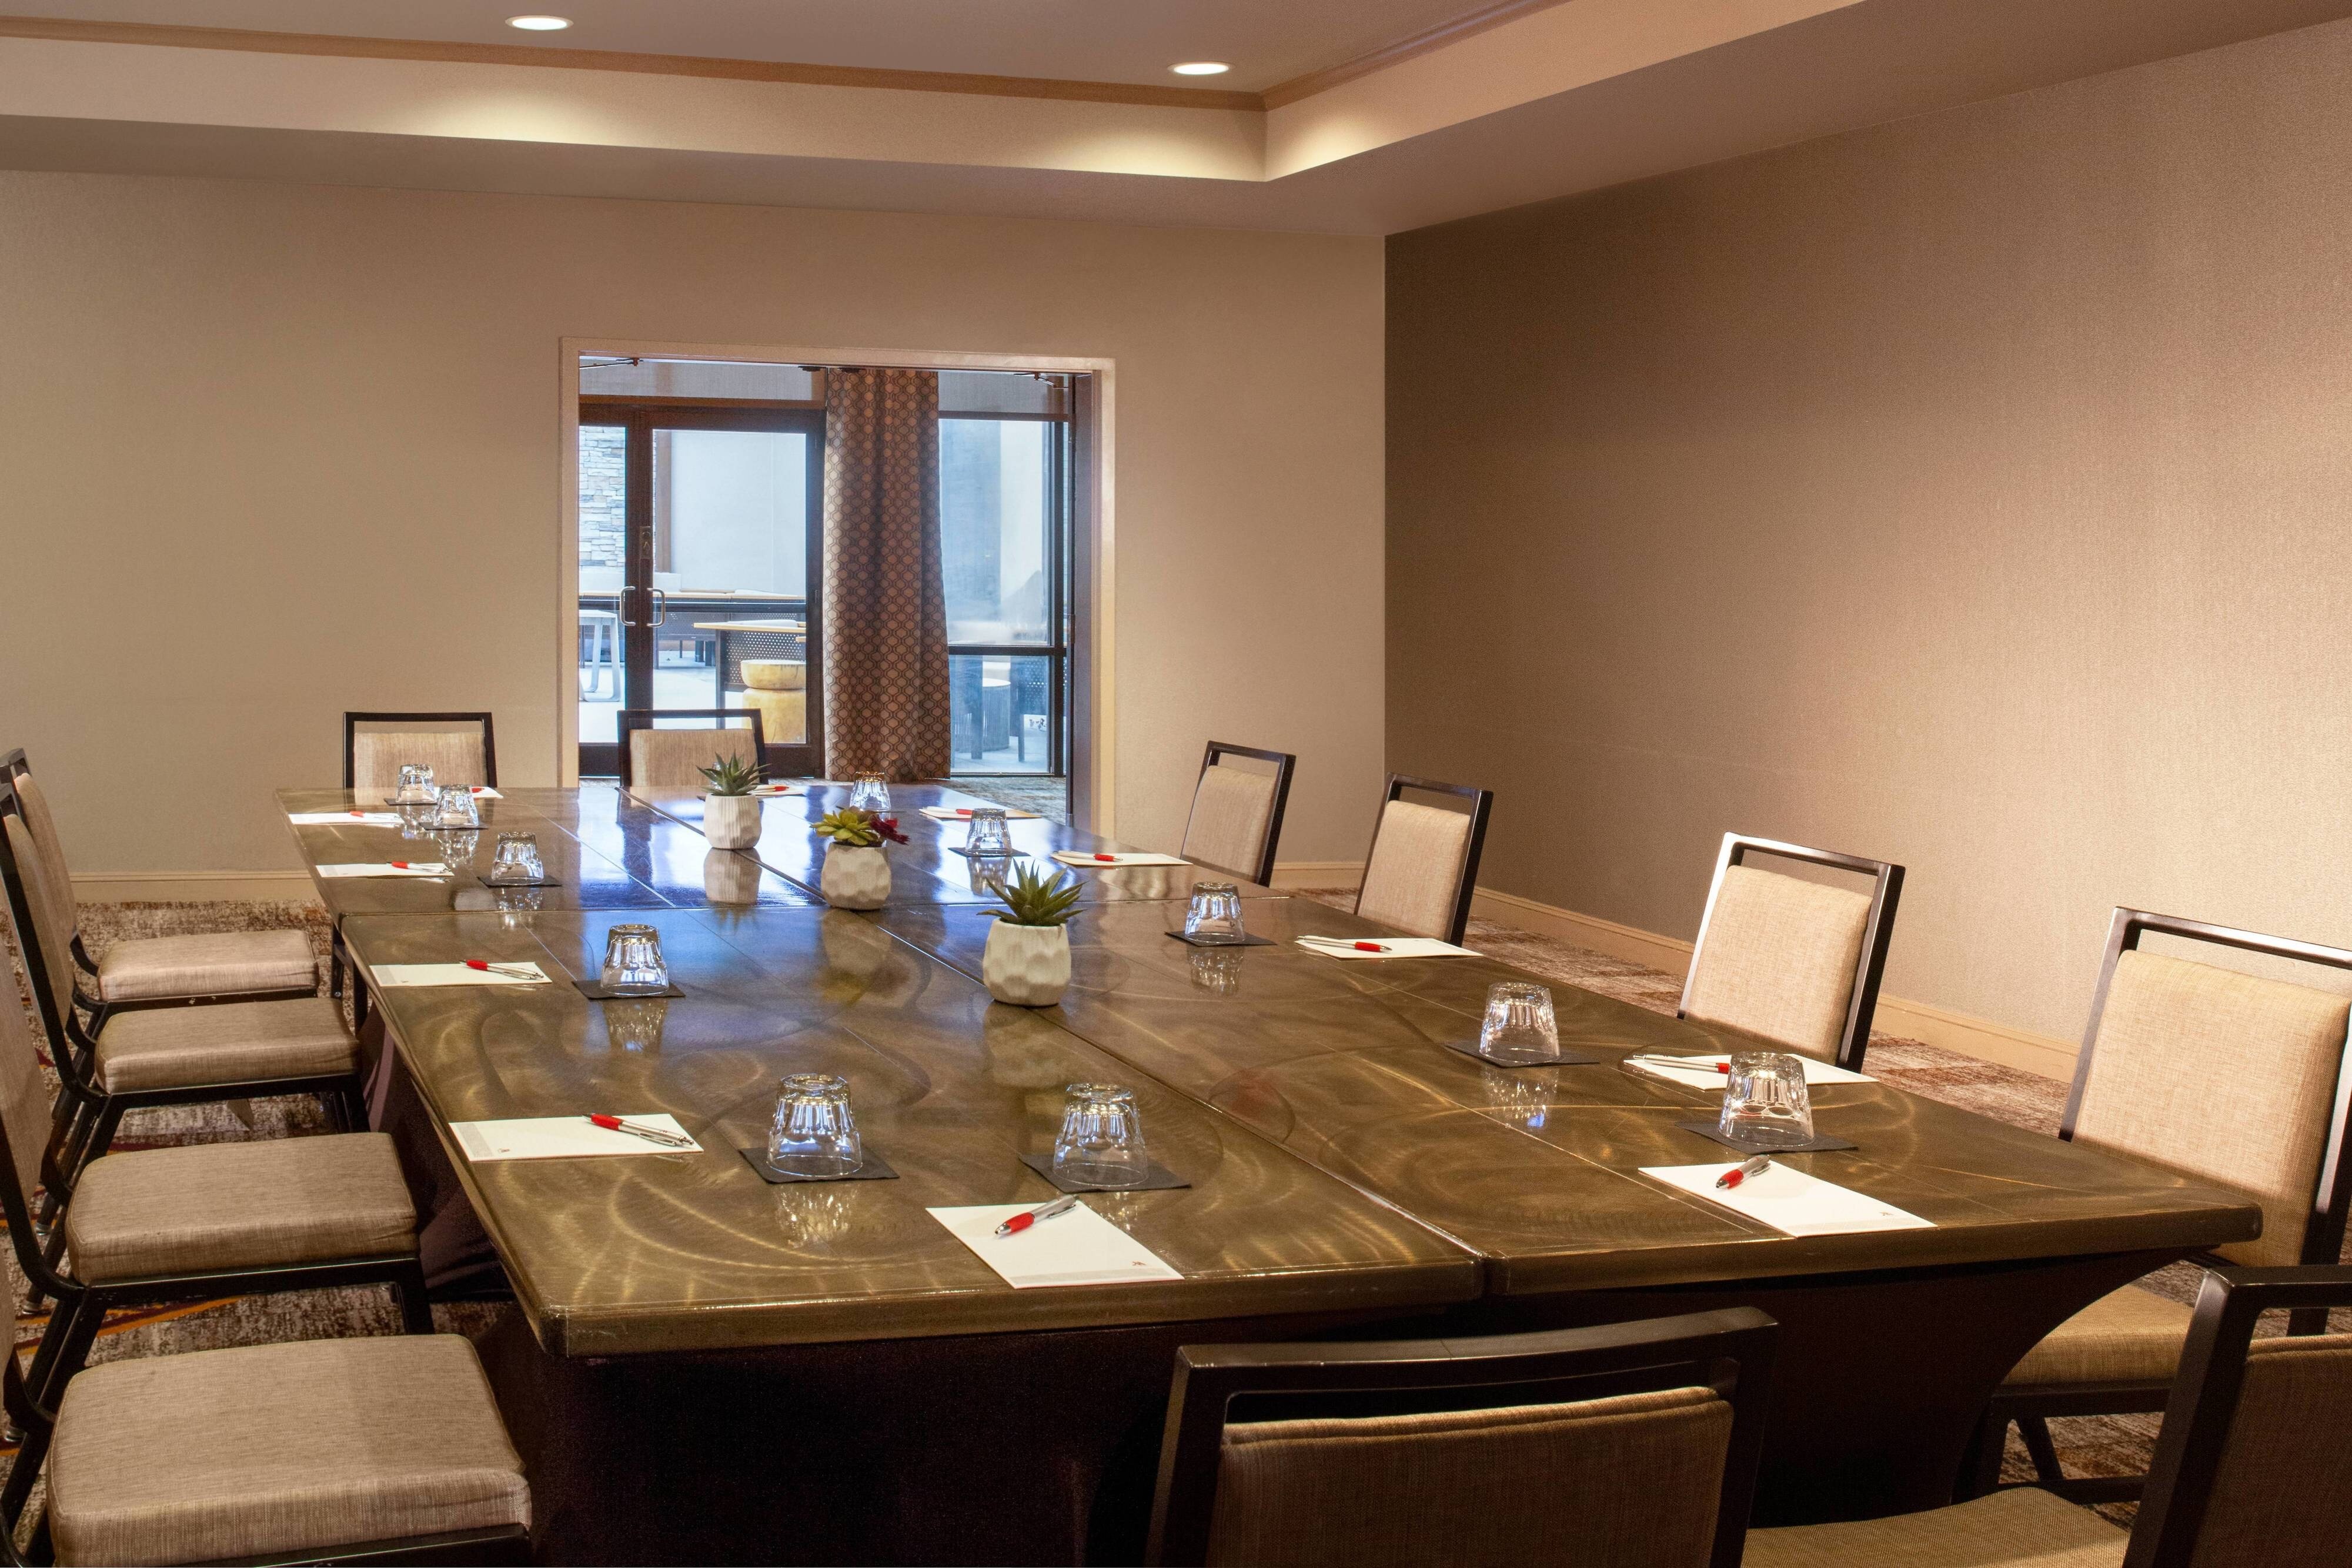 Franklin Meeting Room - Conference Setup